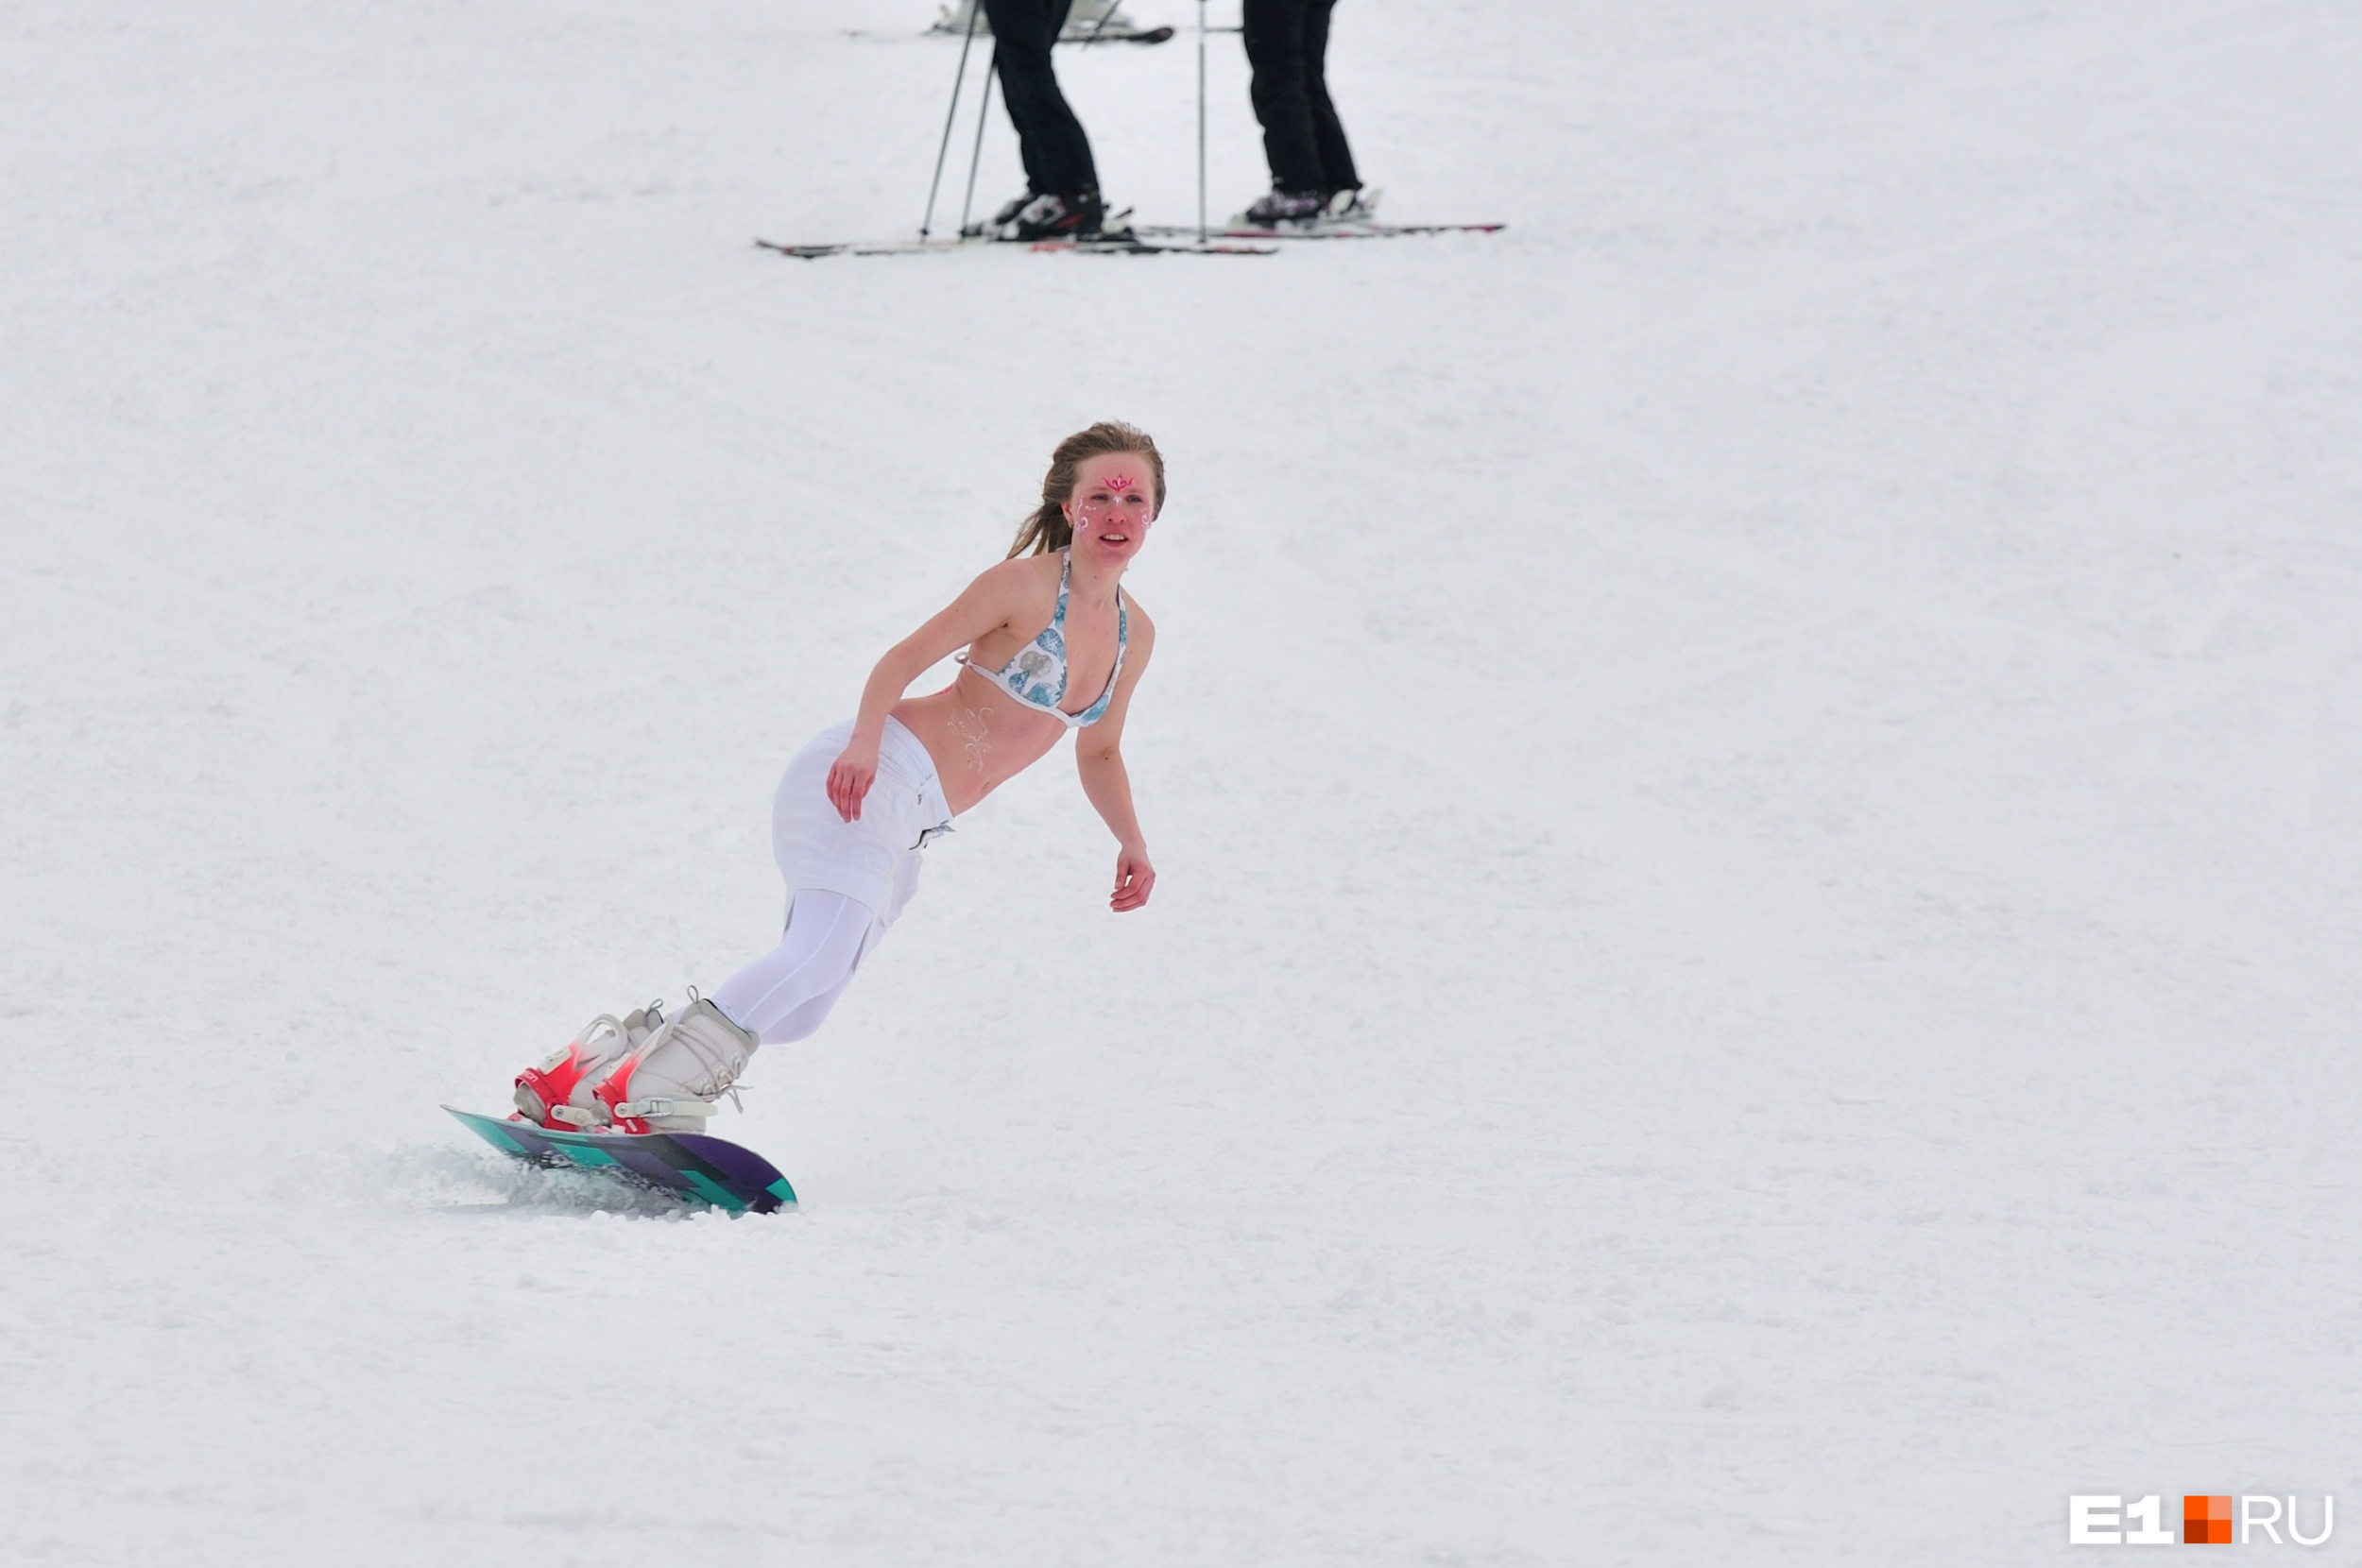 Морозы повлияли на работу главного горнолыжного курорта Кузбасса — в Шерегеше не работают подъемники